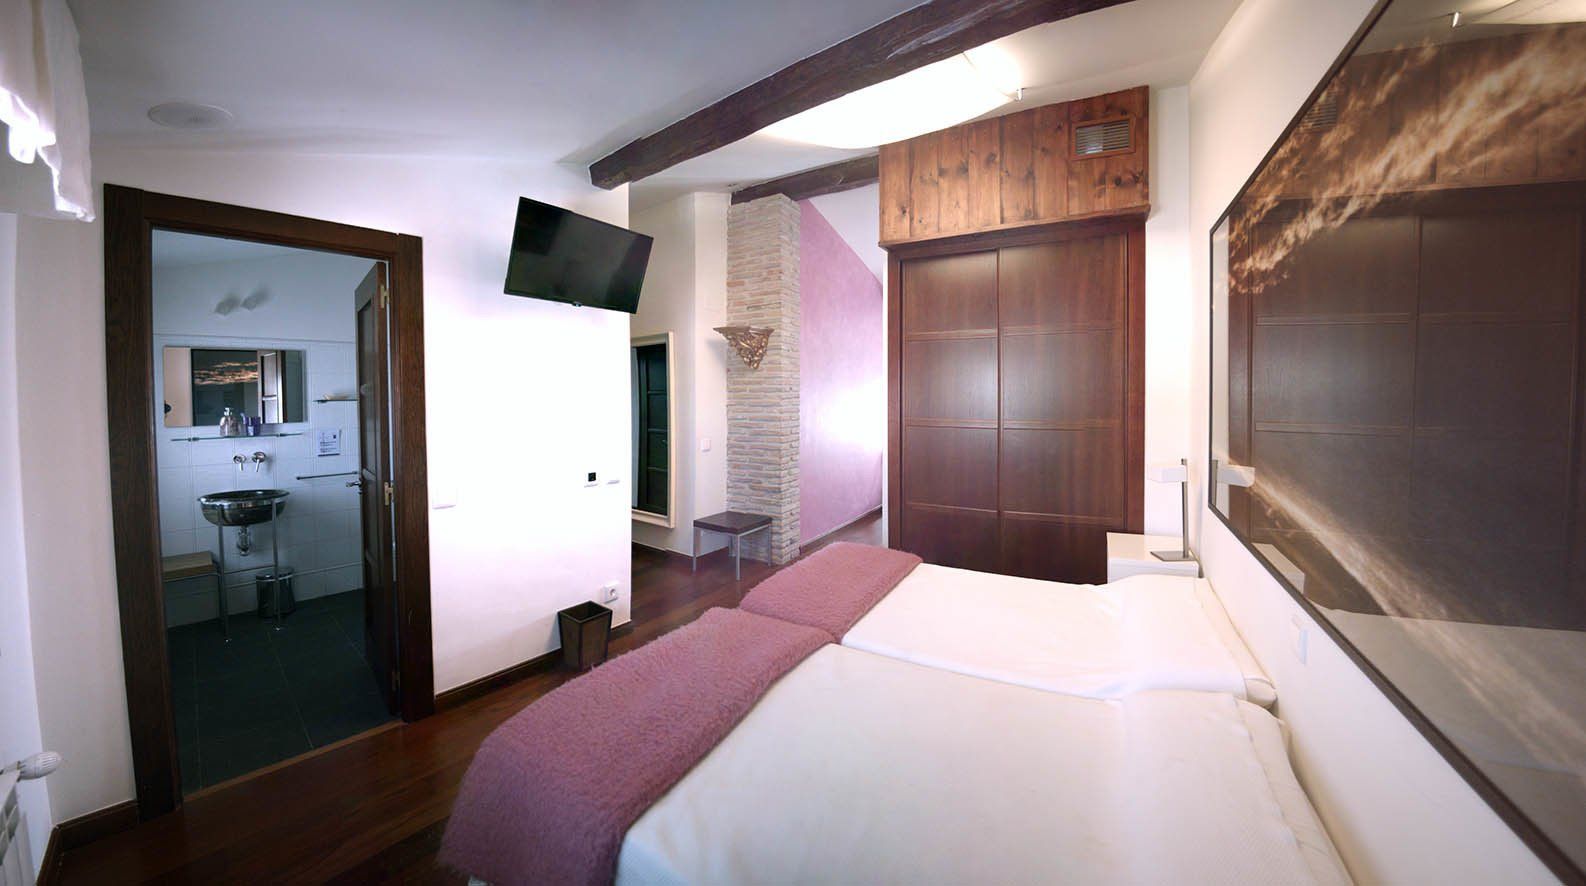 la habitacion es perfecta para familias dispone de un baño privado amplio y vistas preciosas al la sierra del Moncalvillo